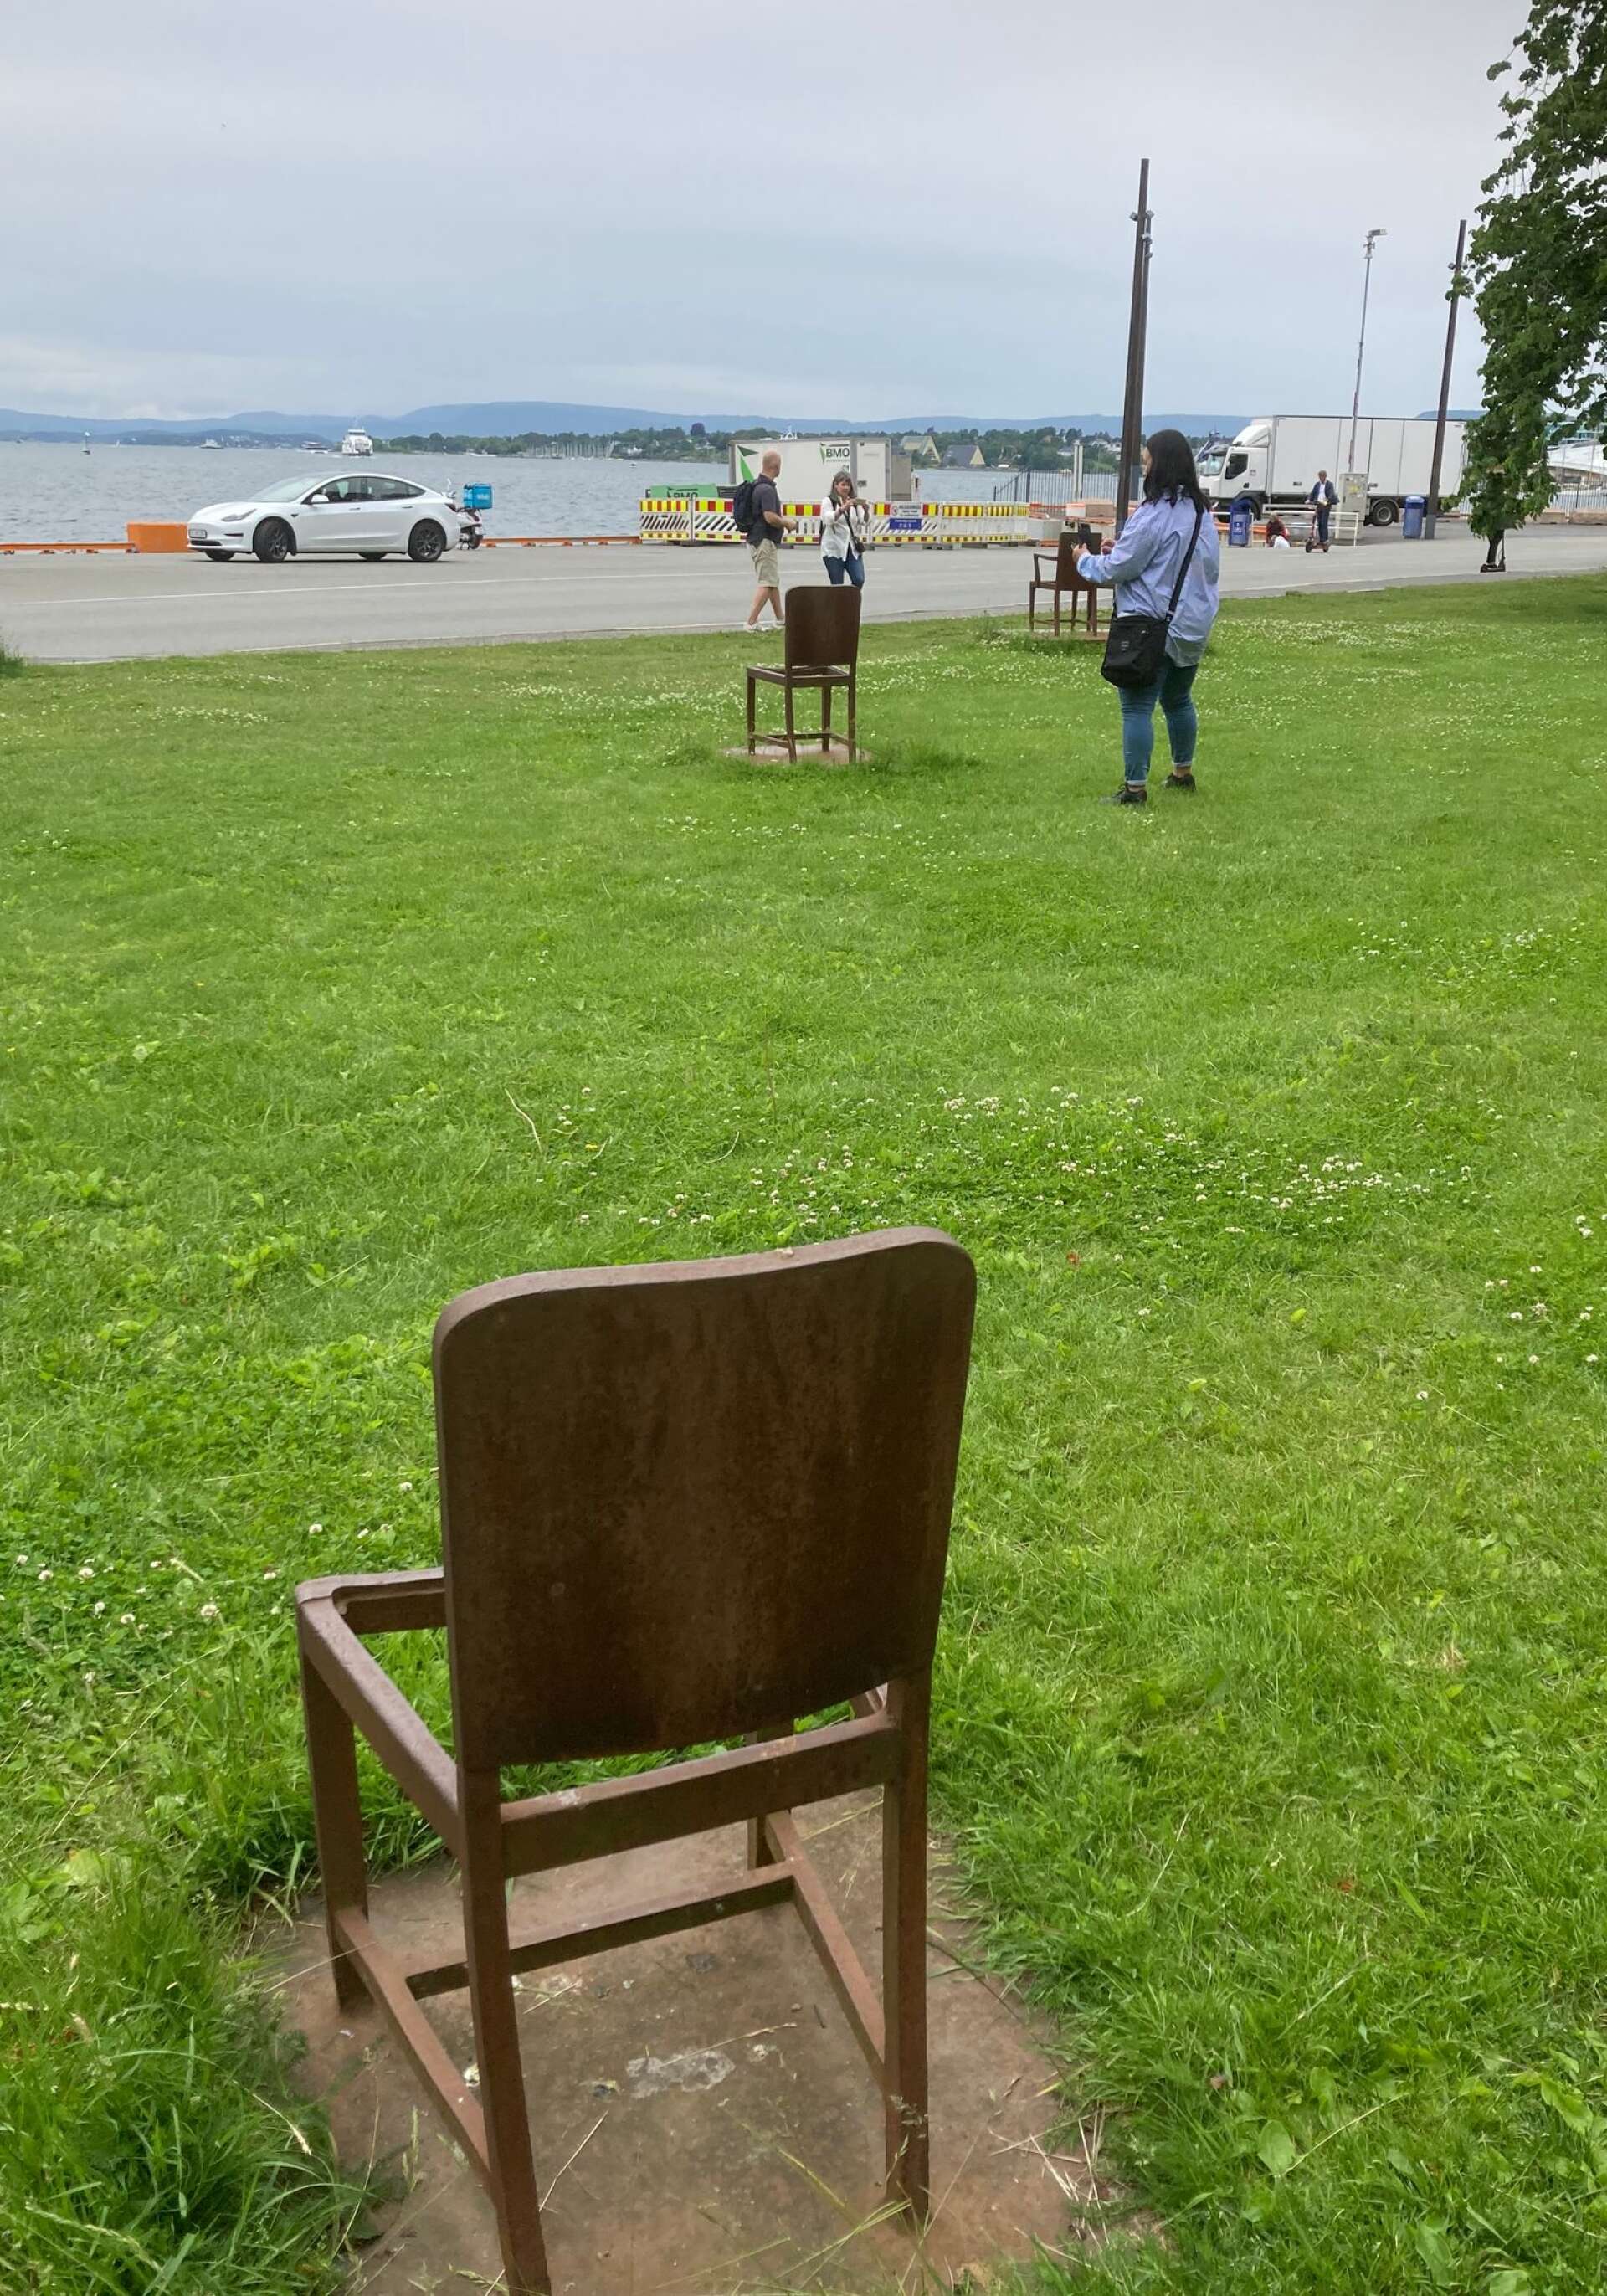 Vid kajen där skeppet Donau fraktade bort de norska judarna finns idag ett minnesmonument bestående av stolar som är omöjliga att sitta på. Betraktaren får begrunda symboliken.